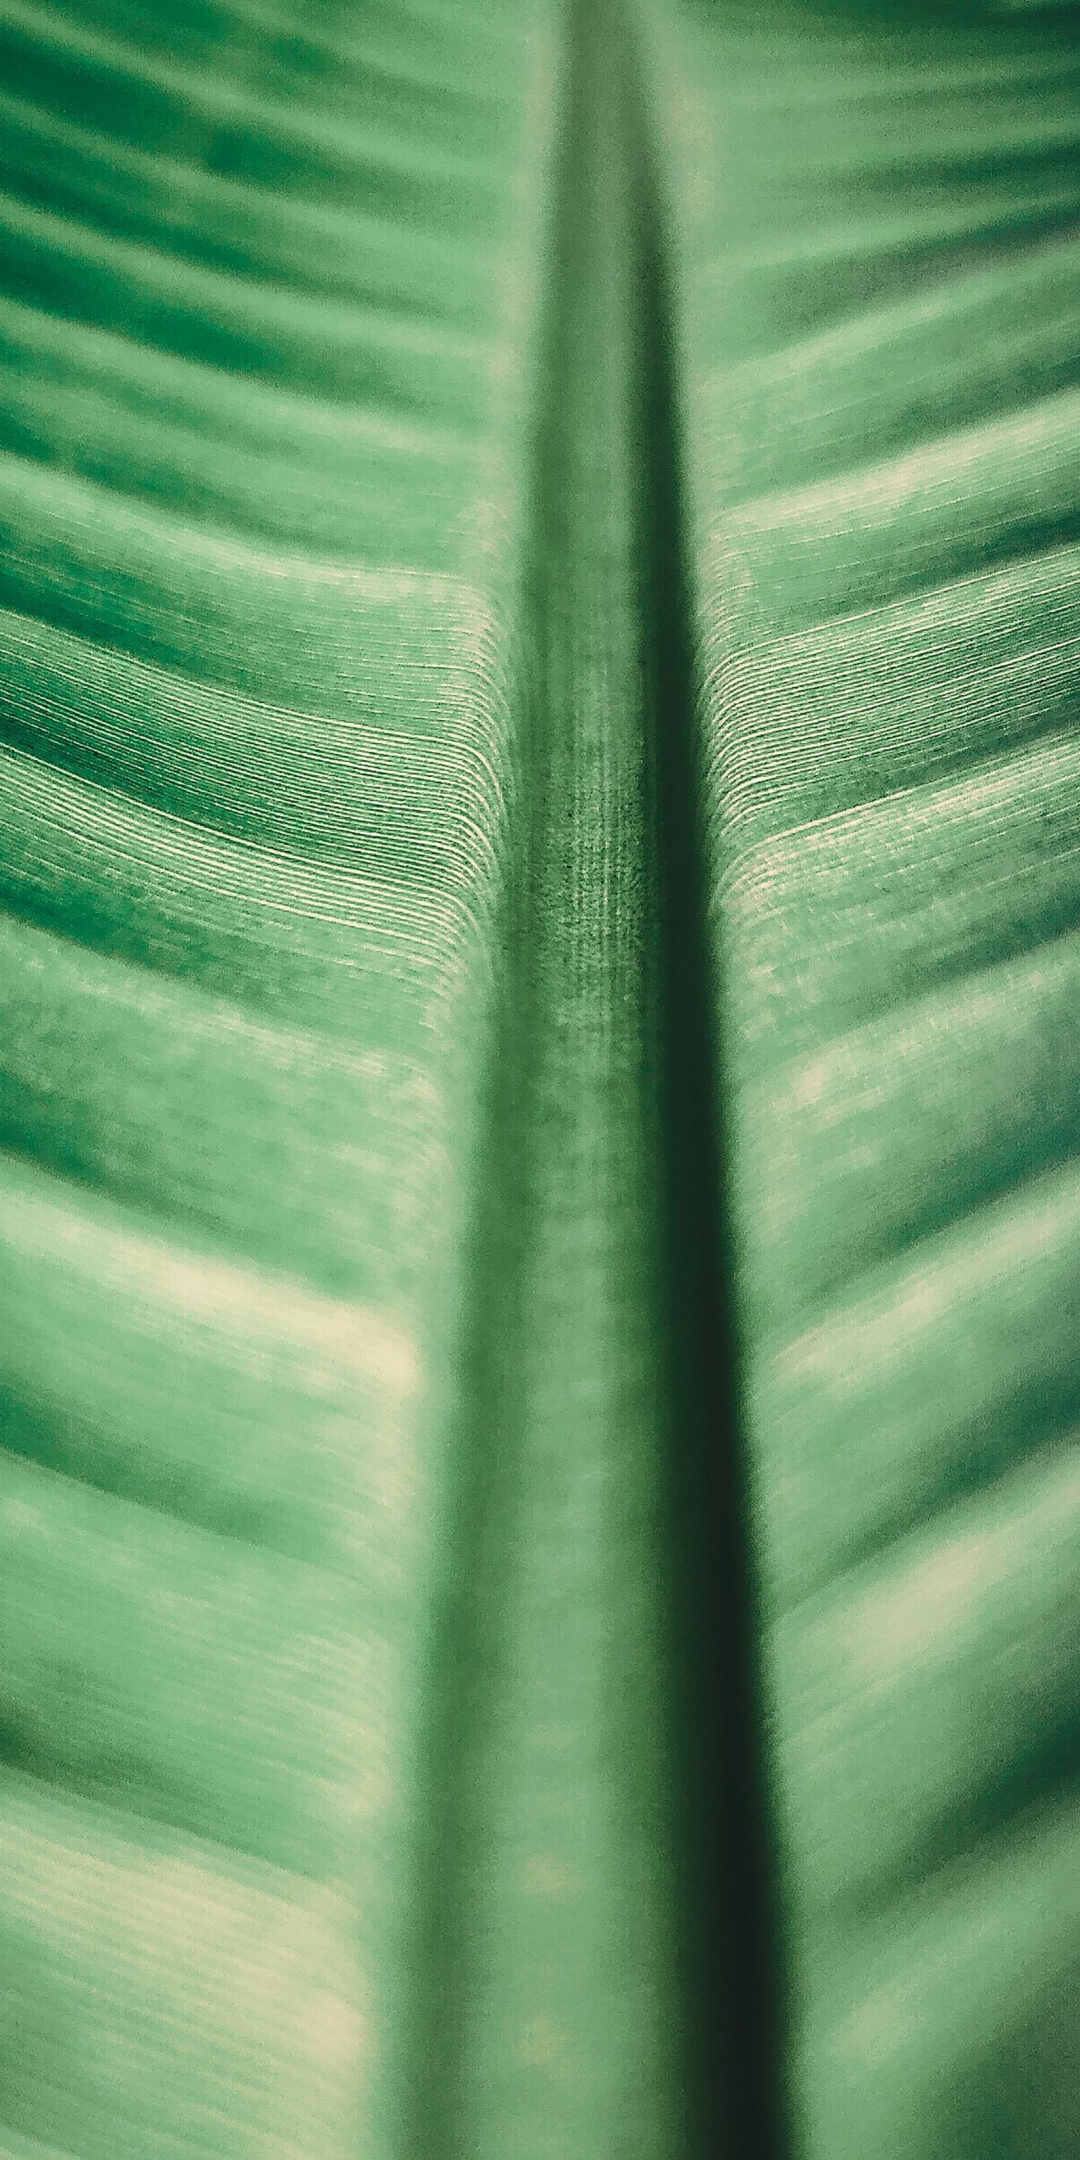 Big green leaf, texture, nature, 1080x2160 wallpaper